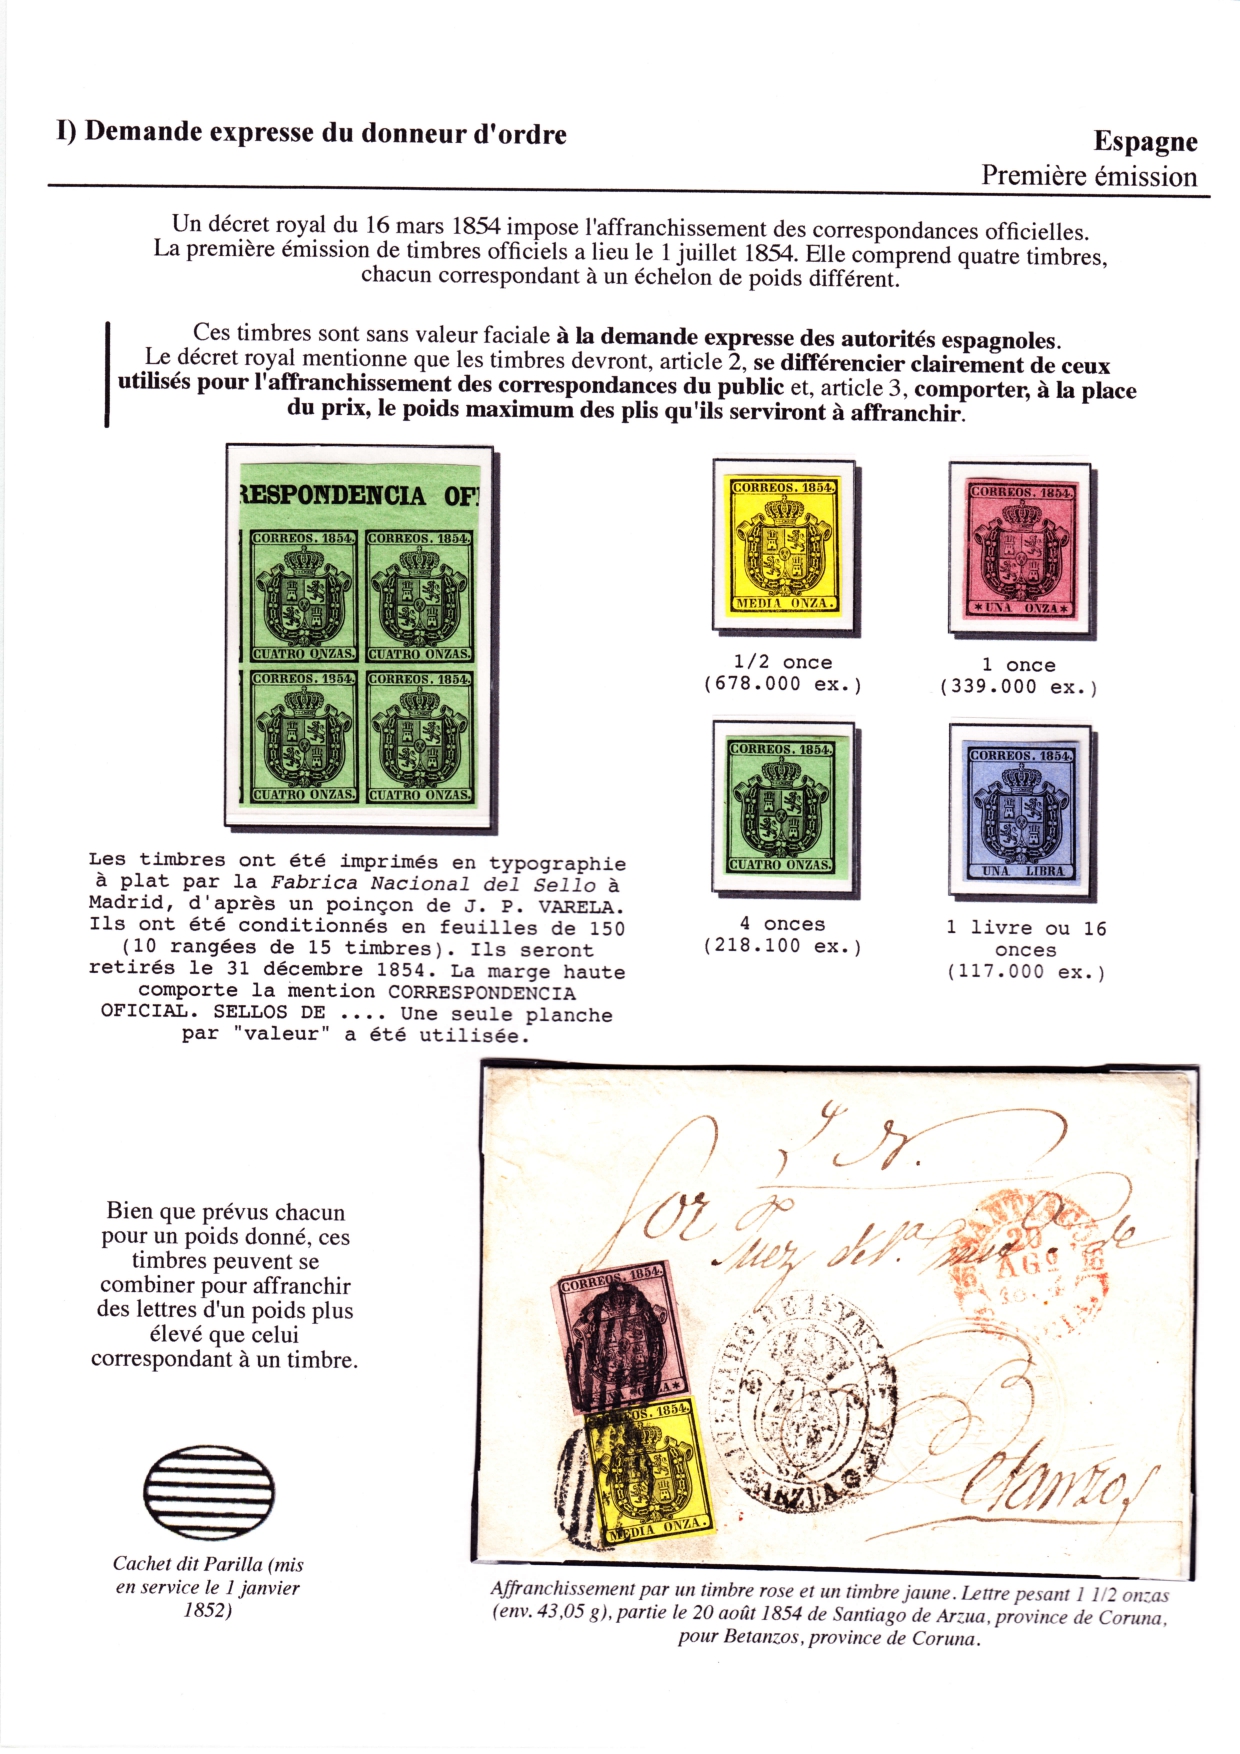 Les d��buts des timbres sans valeur faciale apparente p. 2